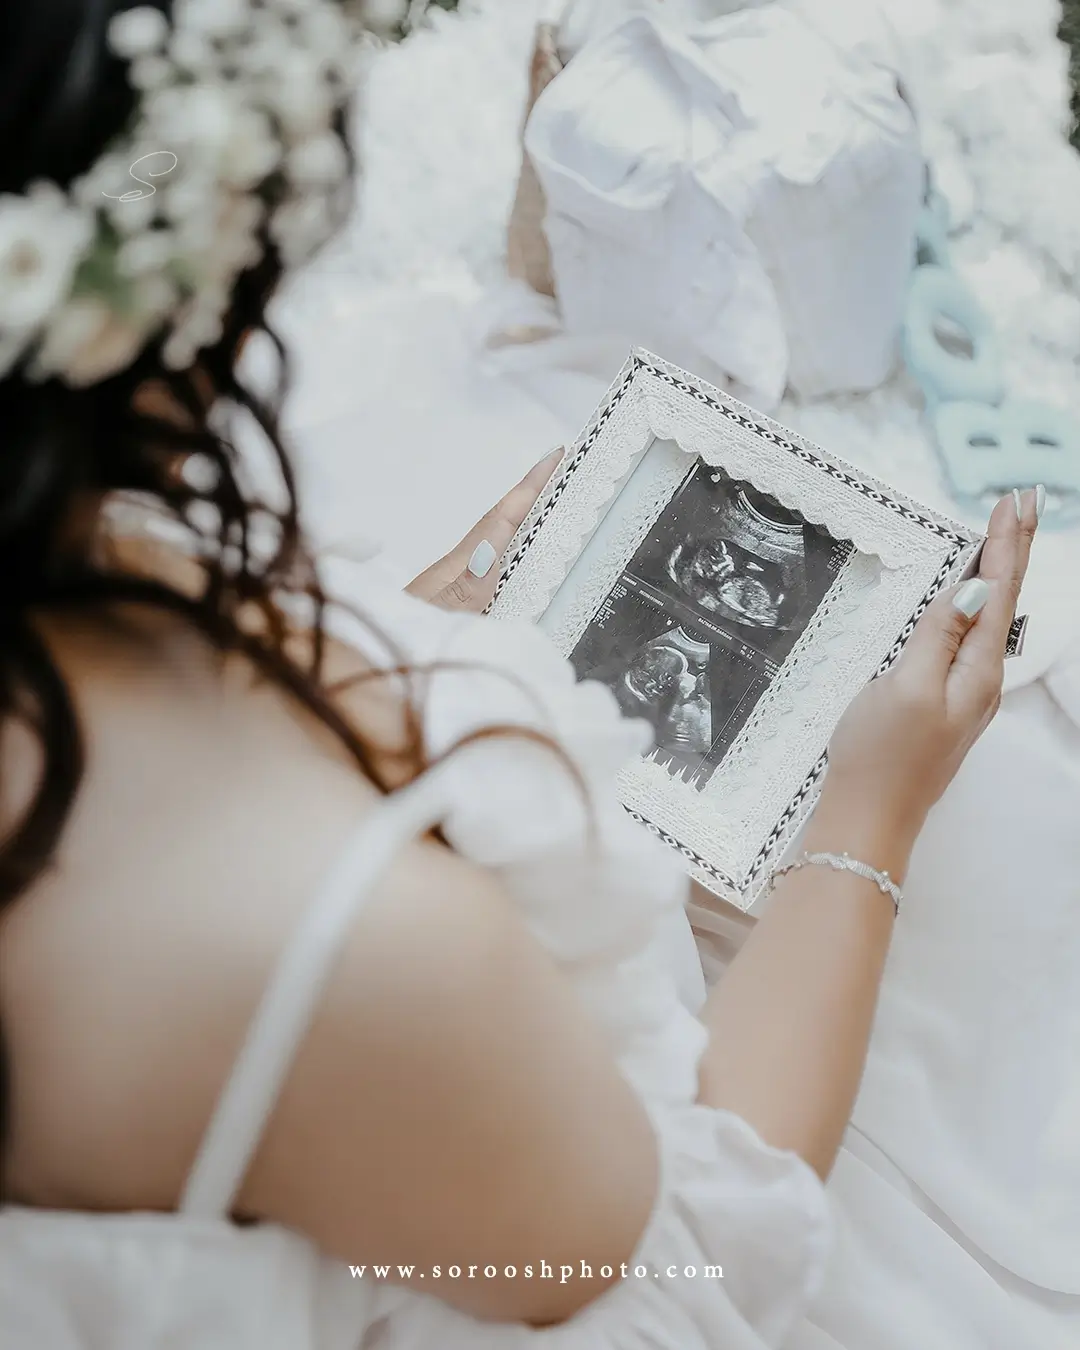 عکاسی بارداری با لباس تور و تصویر سونوگرافی